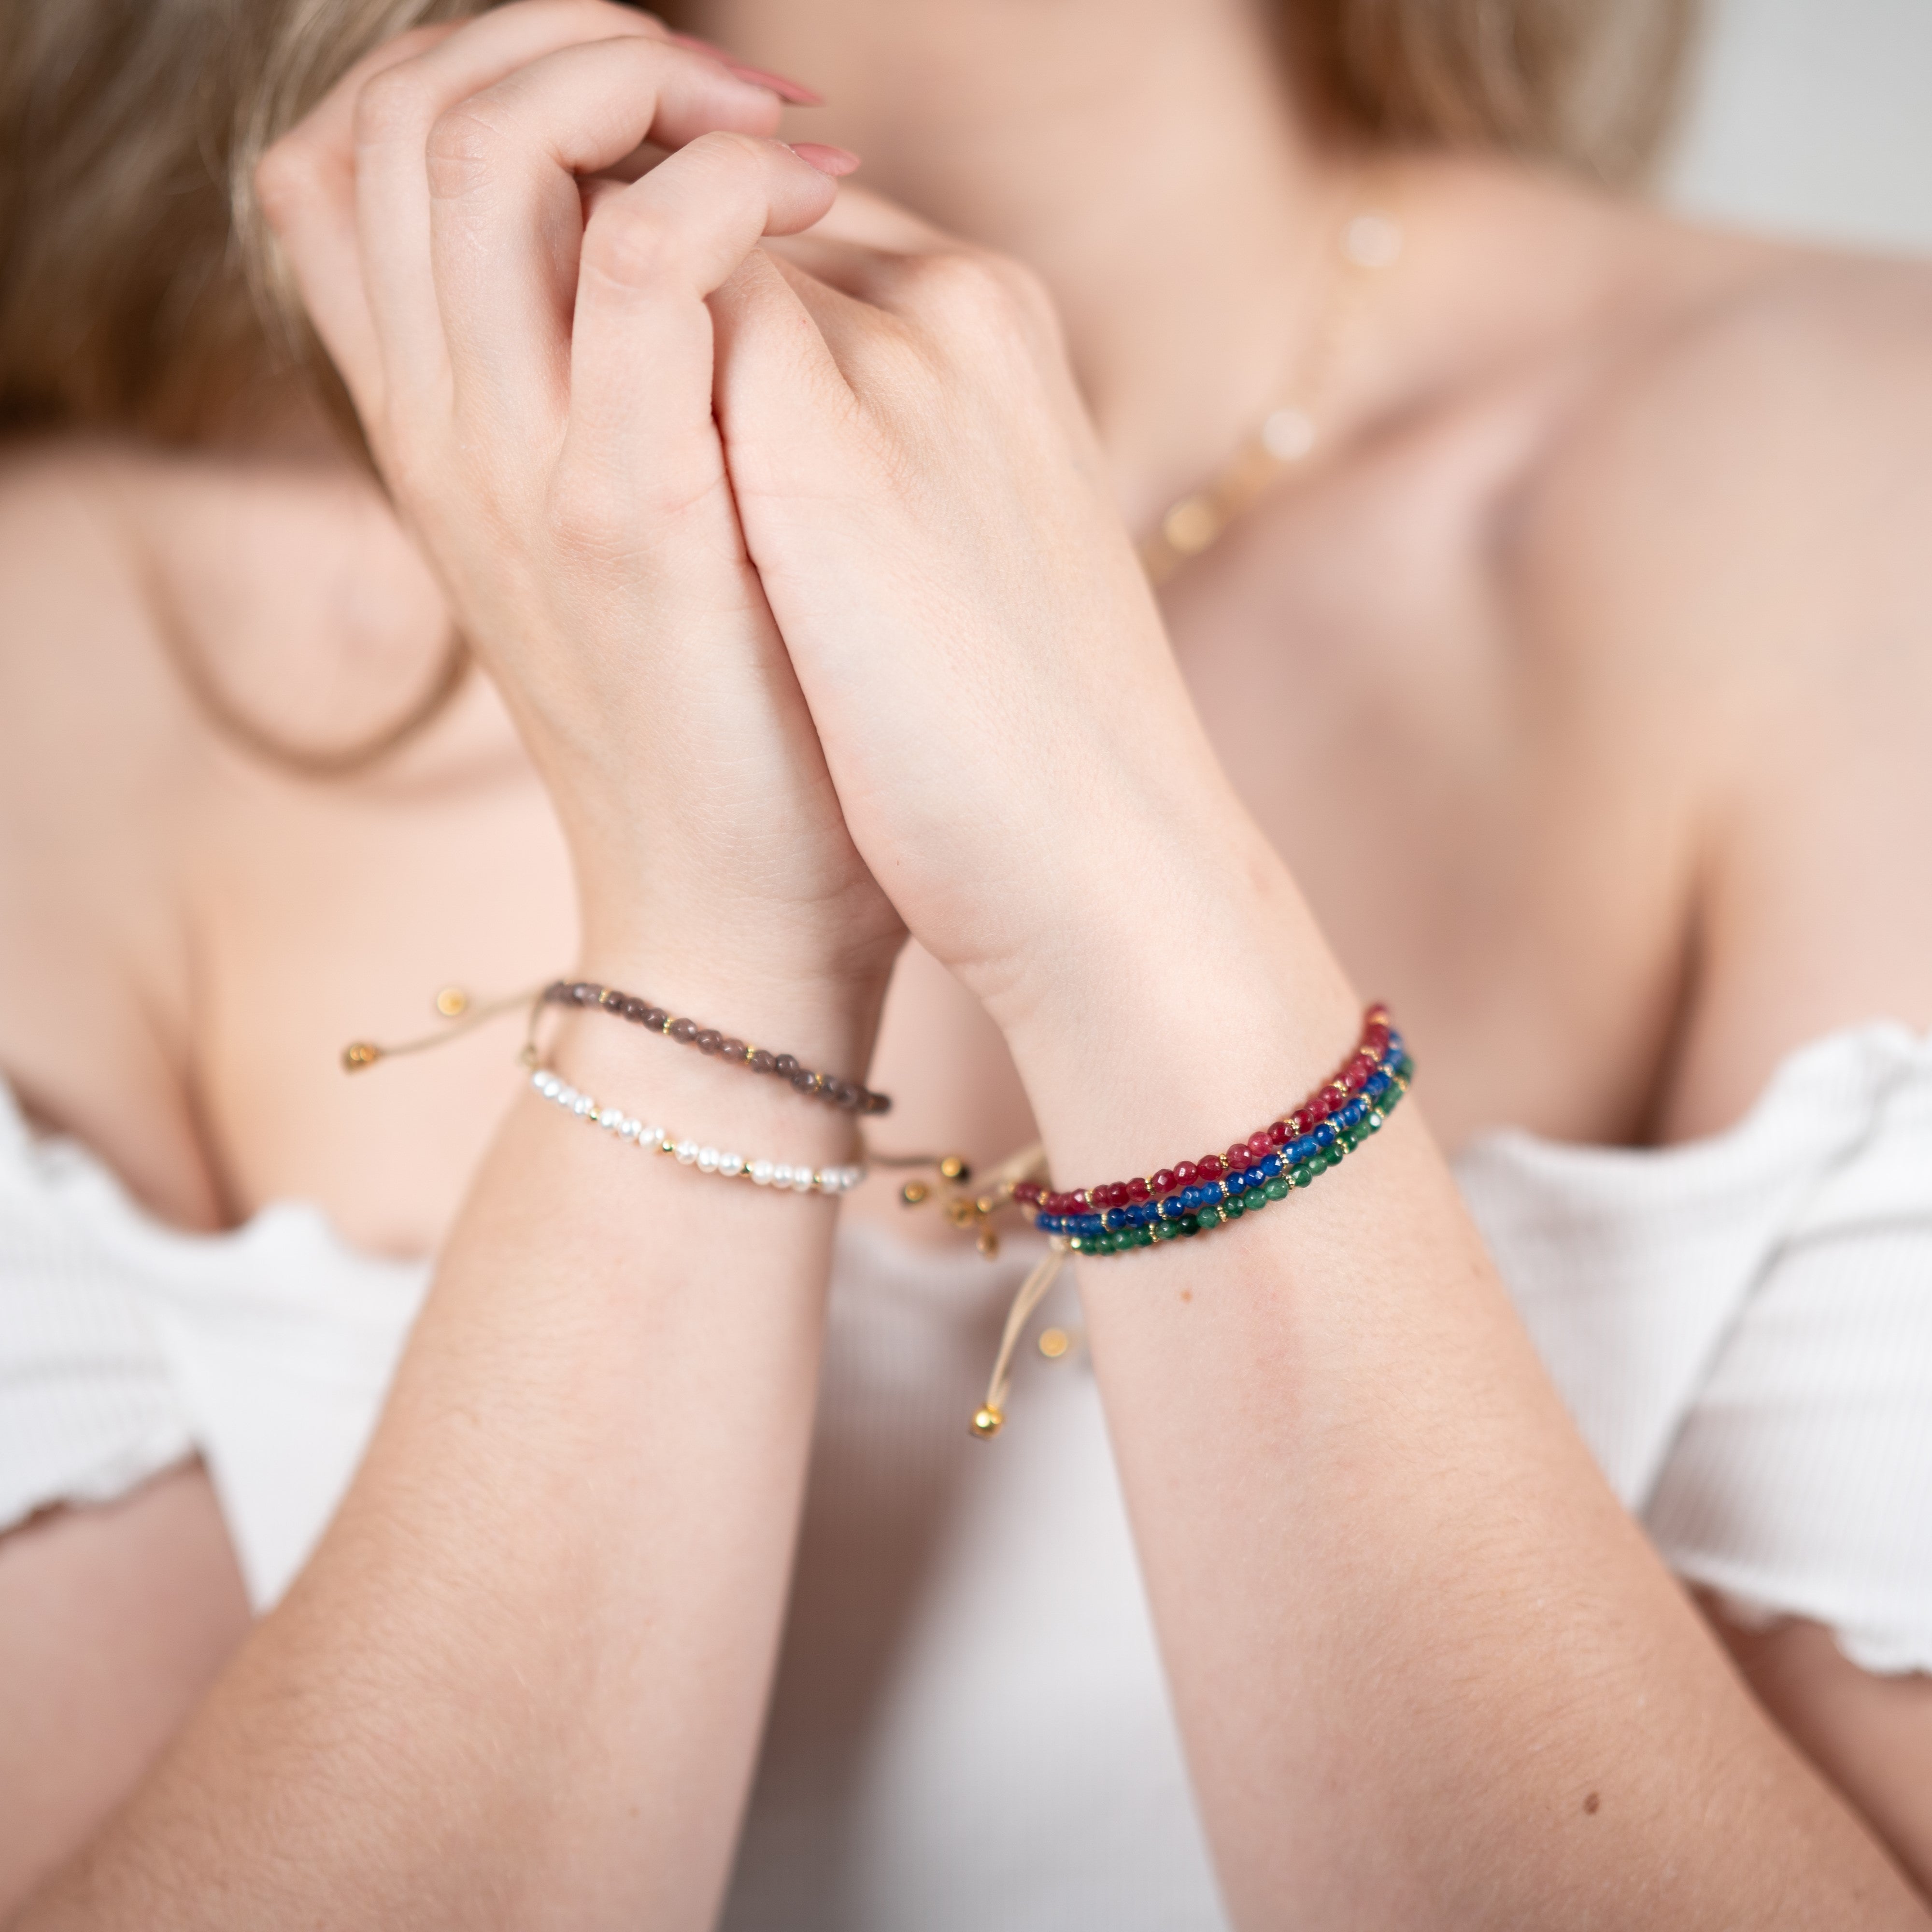 Quatre bracelets dont un bracelet quartz vert, un bracelet quartz rouge, un bracelet quartz fumé, un bracelet quartz bleu et un bracelet perles naturelles